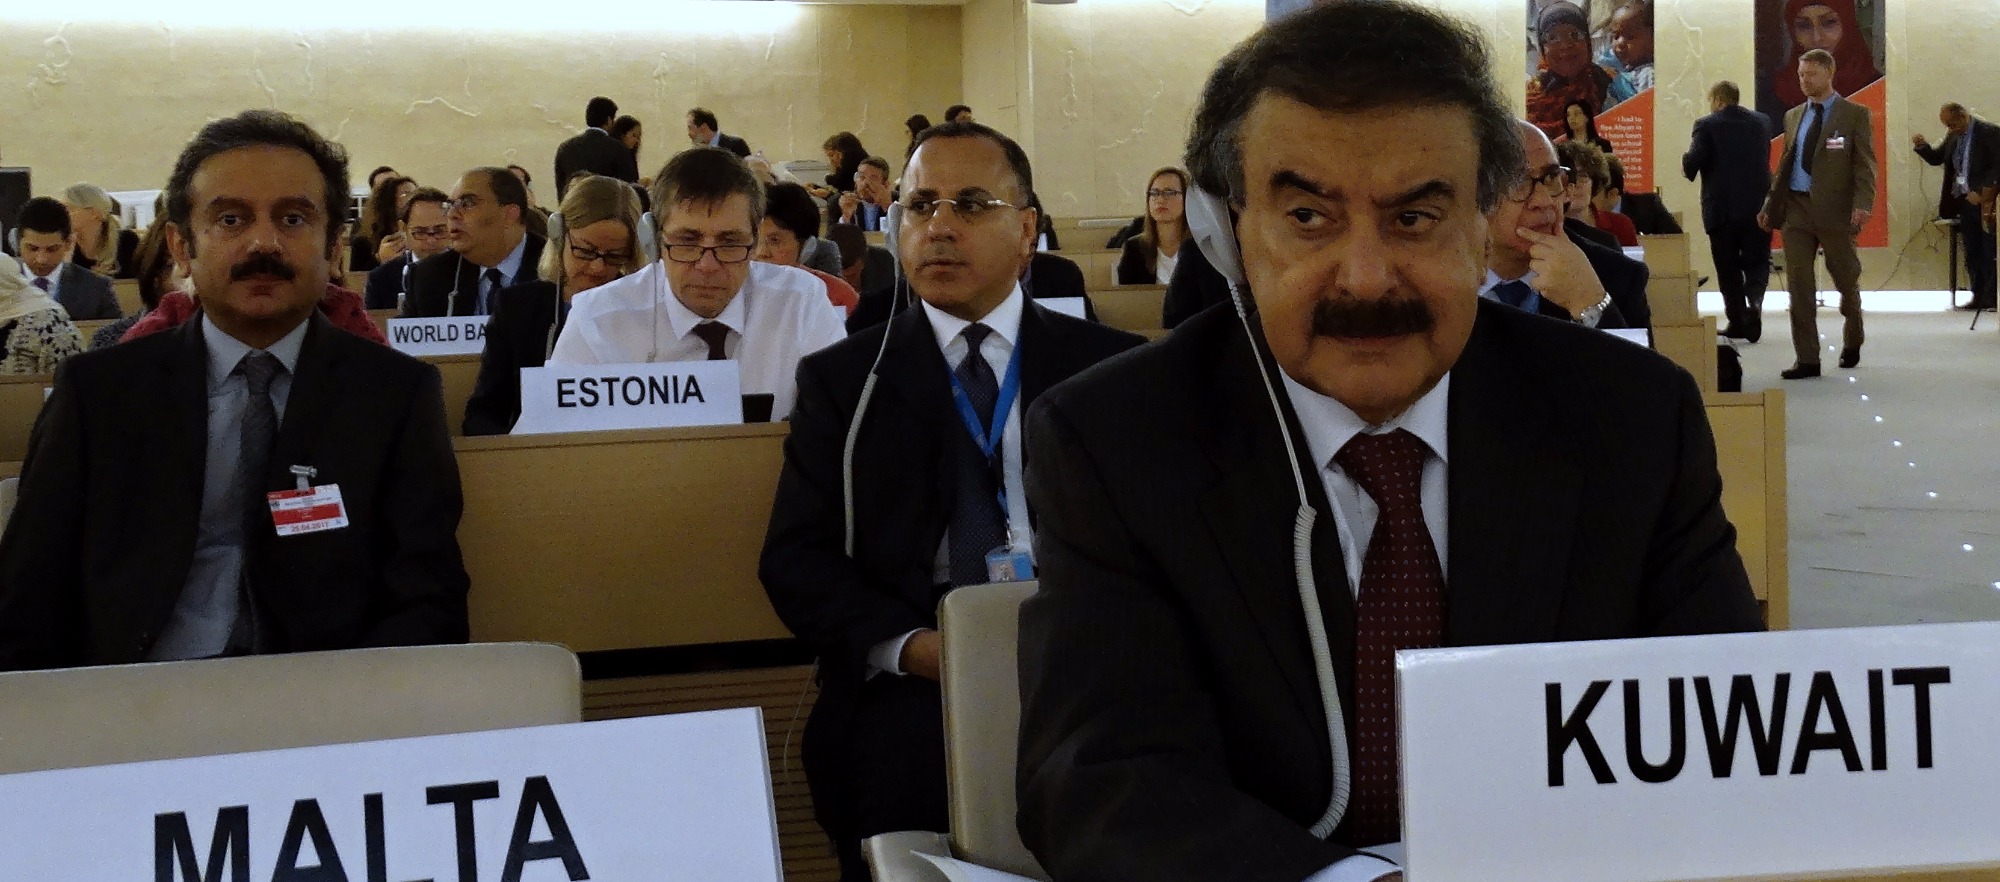 نائب وزير الخارجية الكويتي خالد سليمان الجار الله أثناء المؤتمر الرفيع المستوى بشأن خطة الاستجابة الإنسانية في اليمن المنعقد في جنيف